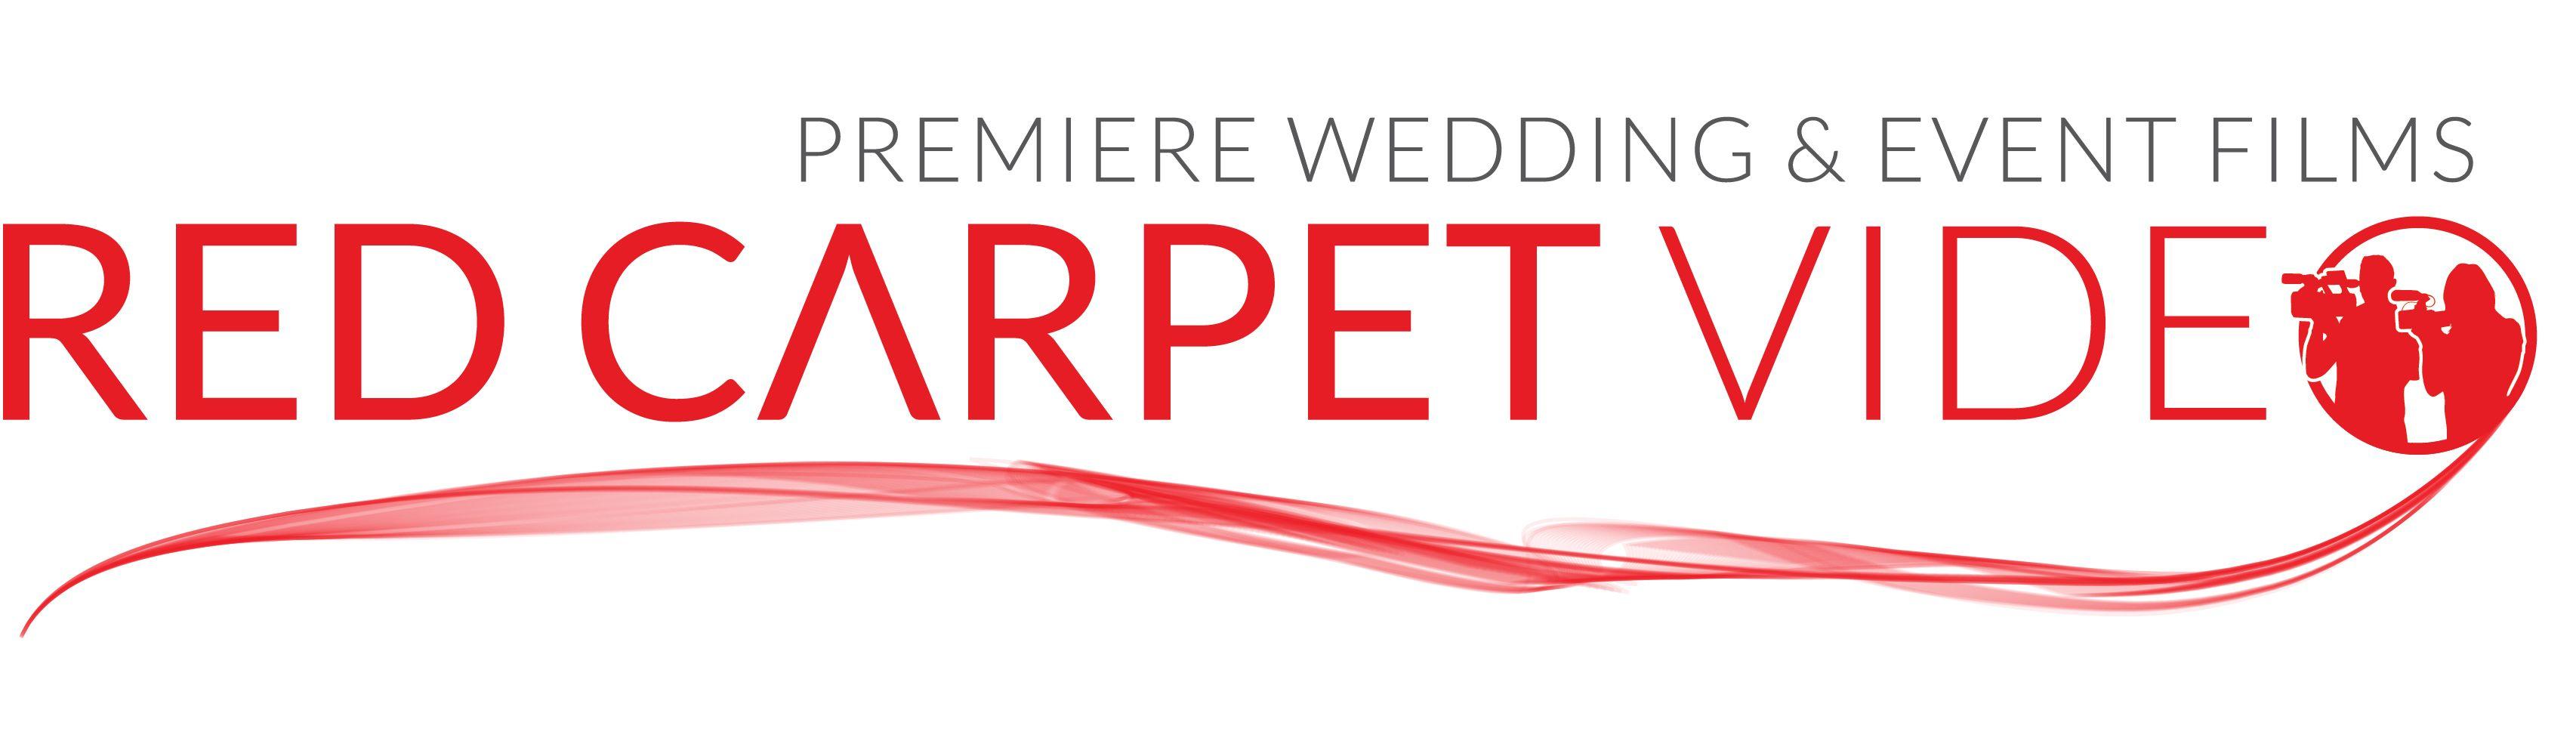 Red Carpet Logo - Red Carpet Video logo